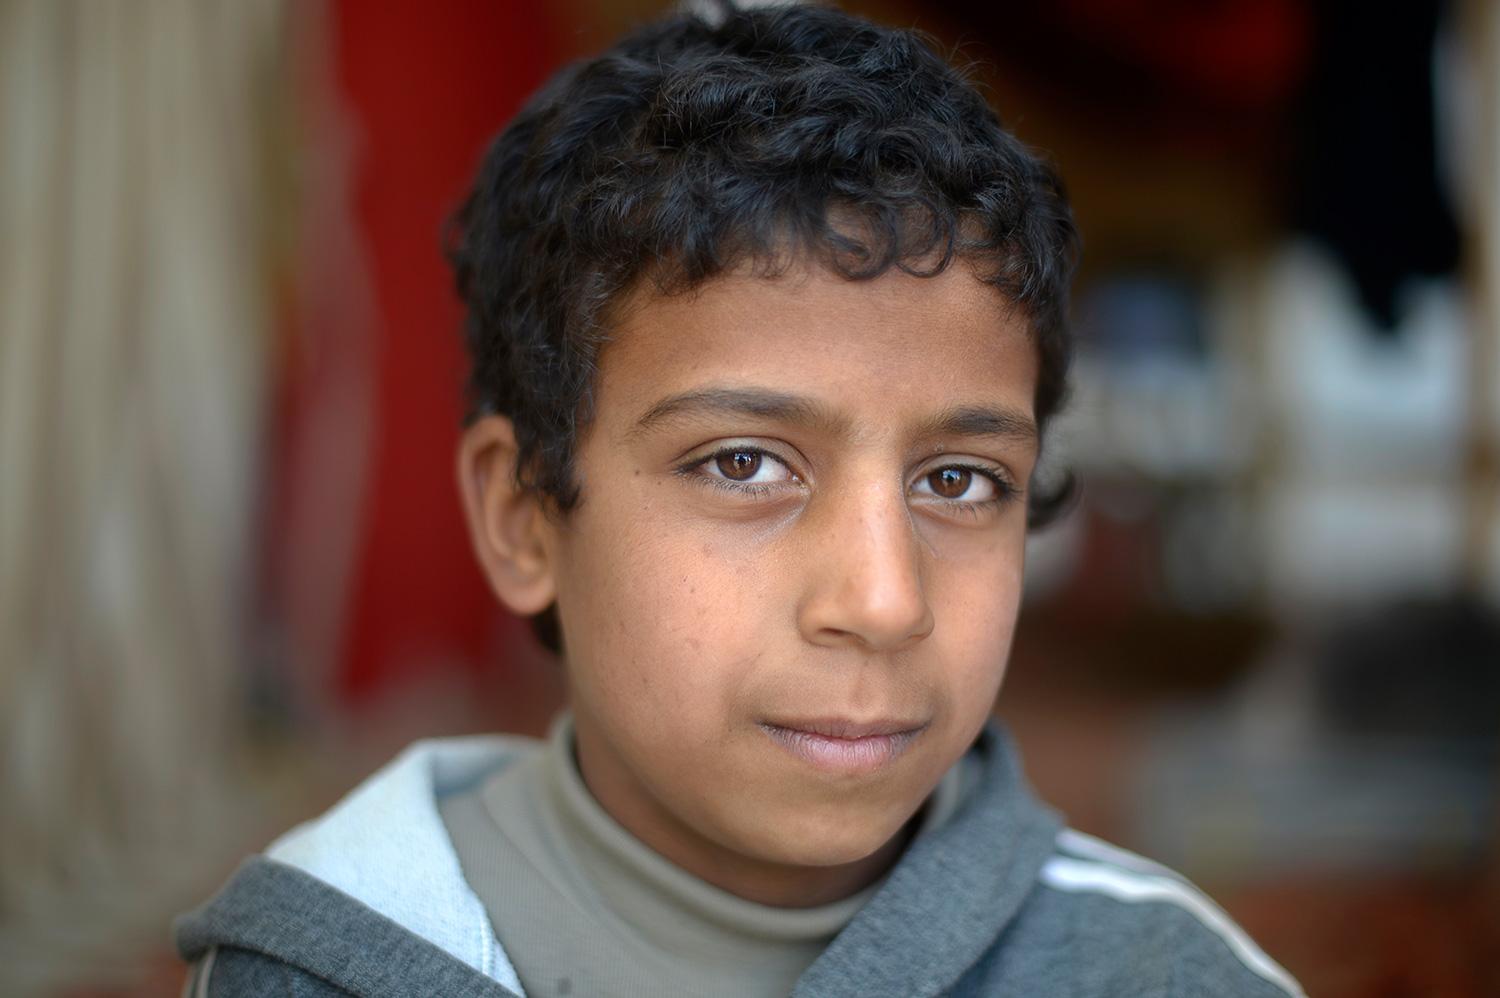 Vad drömmer du om? Omar, 11: Att allt var som förut. Att jag fick åka tillbaka till min by och träffa mina vänner och gå i skolan.